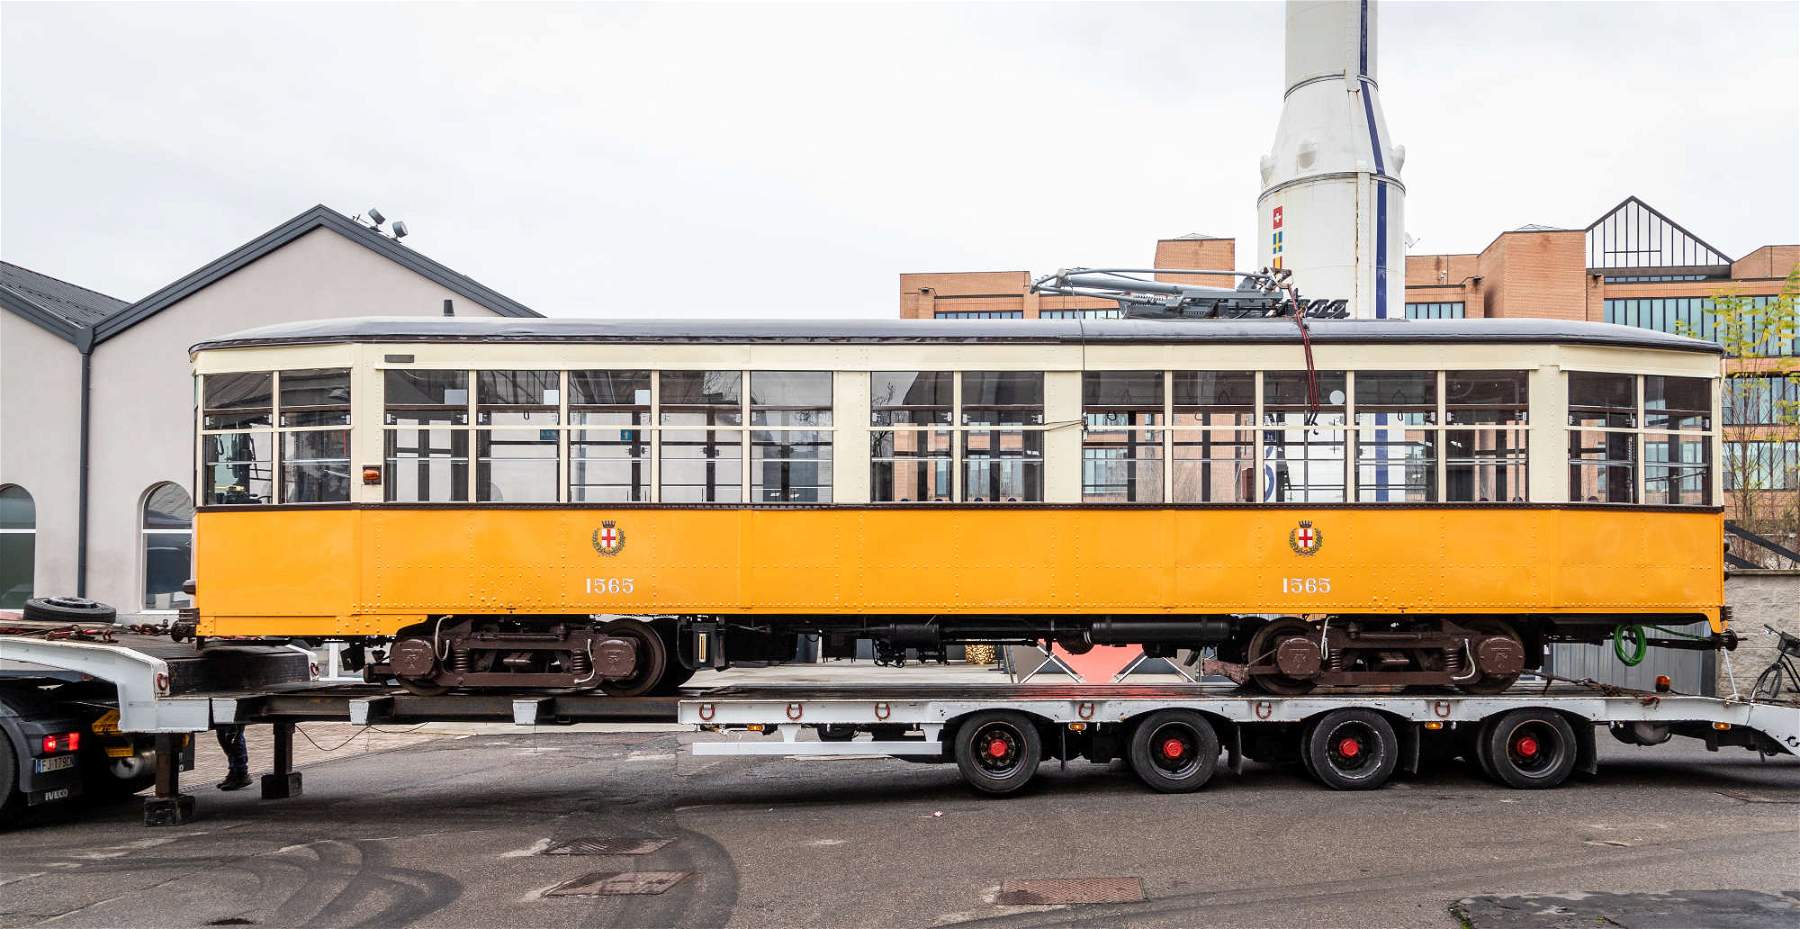 Le tramway historique de Milan de 1928 entre dans les collections du Musée national de la science et de la technologie.